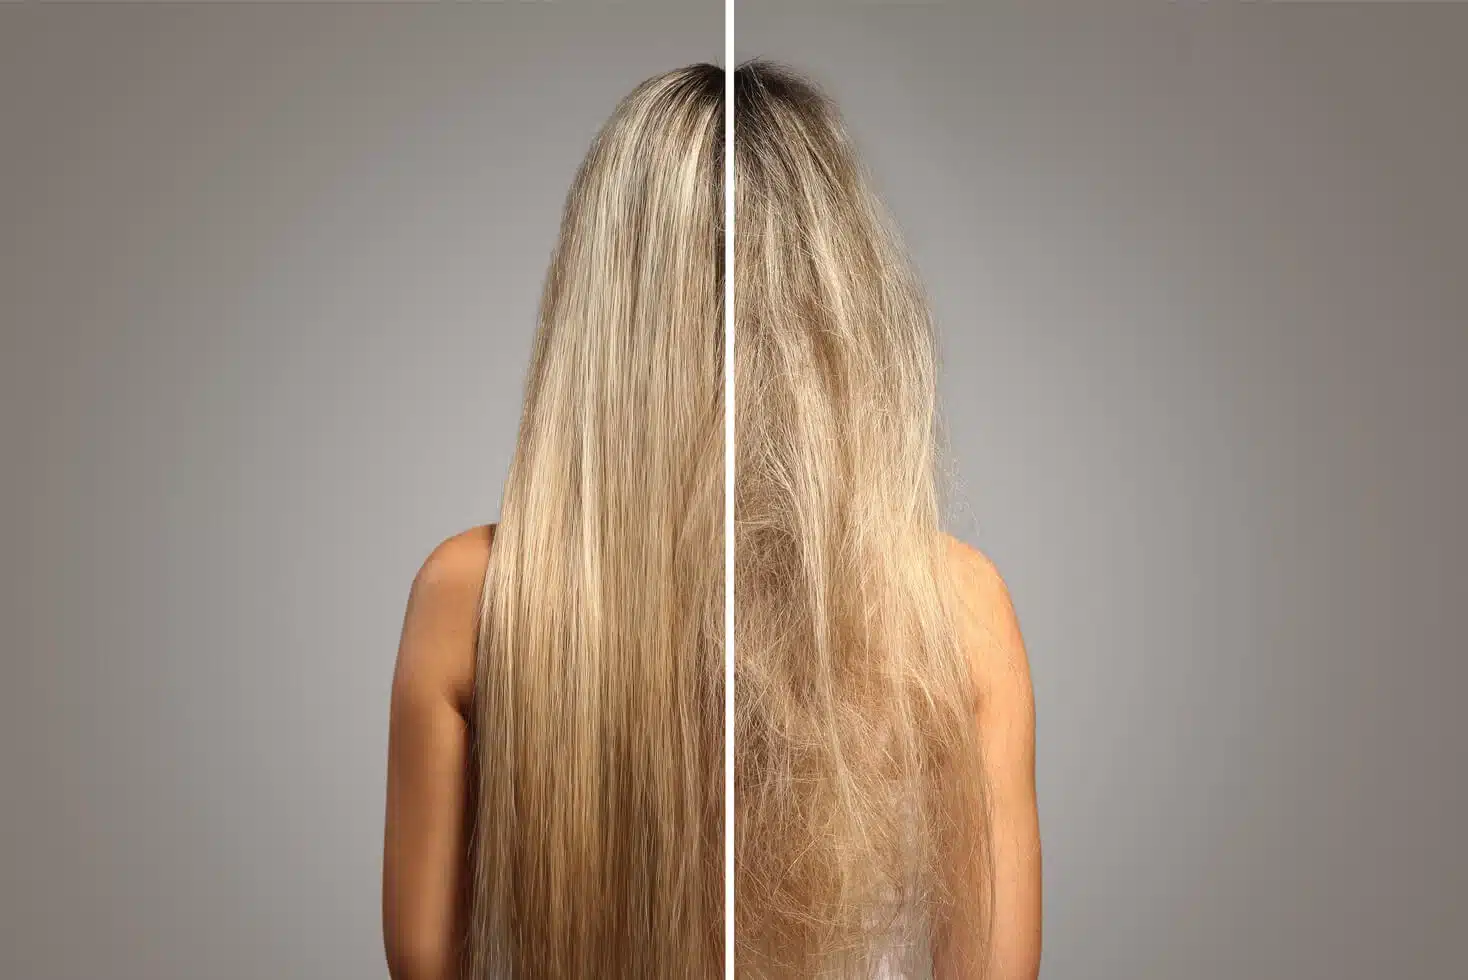 طريقة التخلص من هيشان الشعر لحصولك على شعر ناعم وانسيابي مناسبة للرجال والنساء